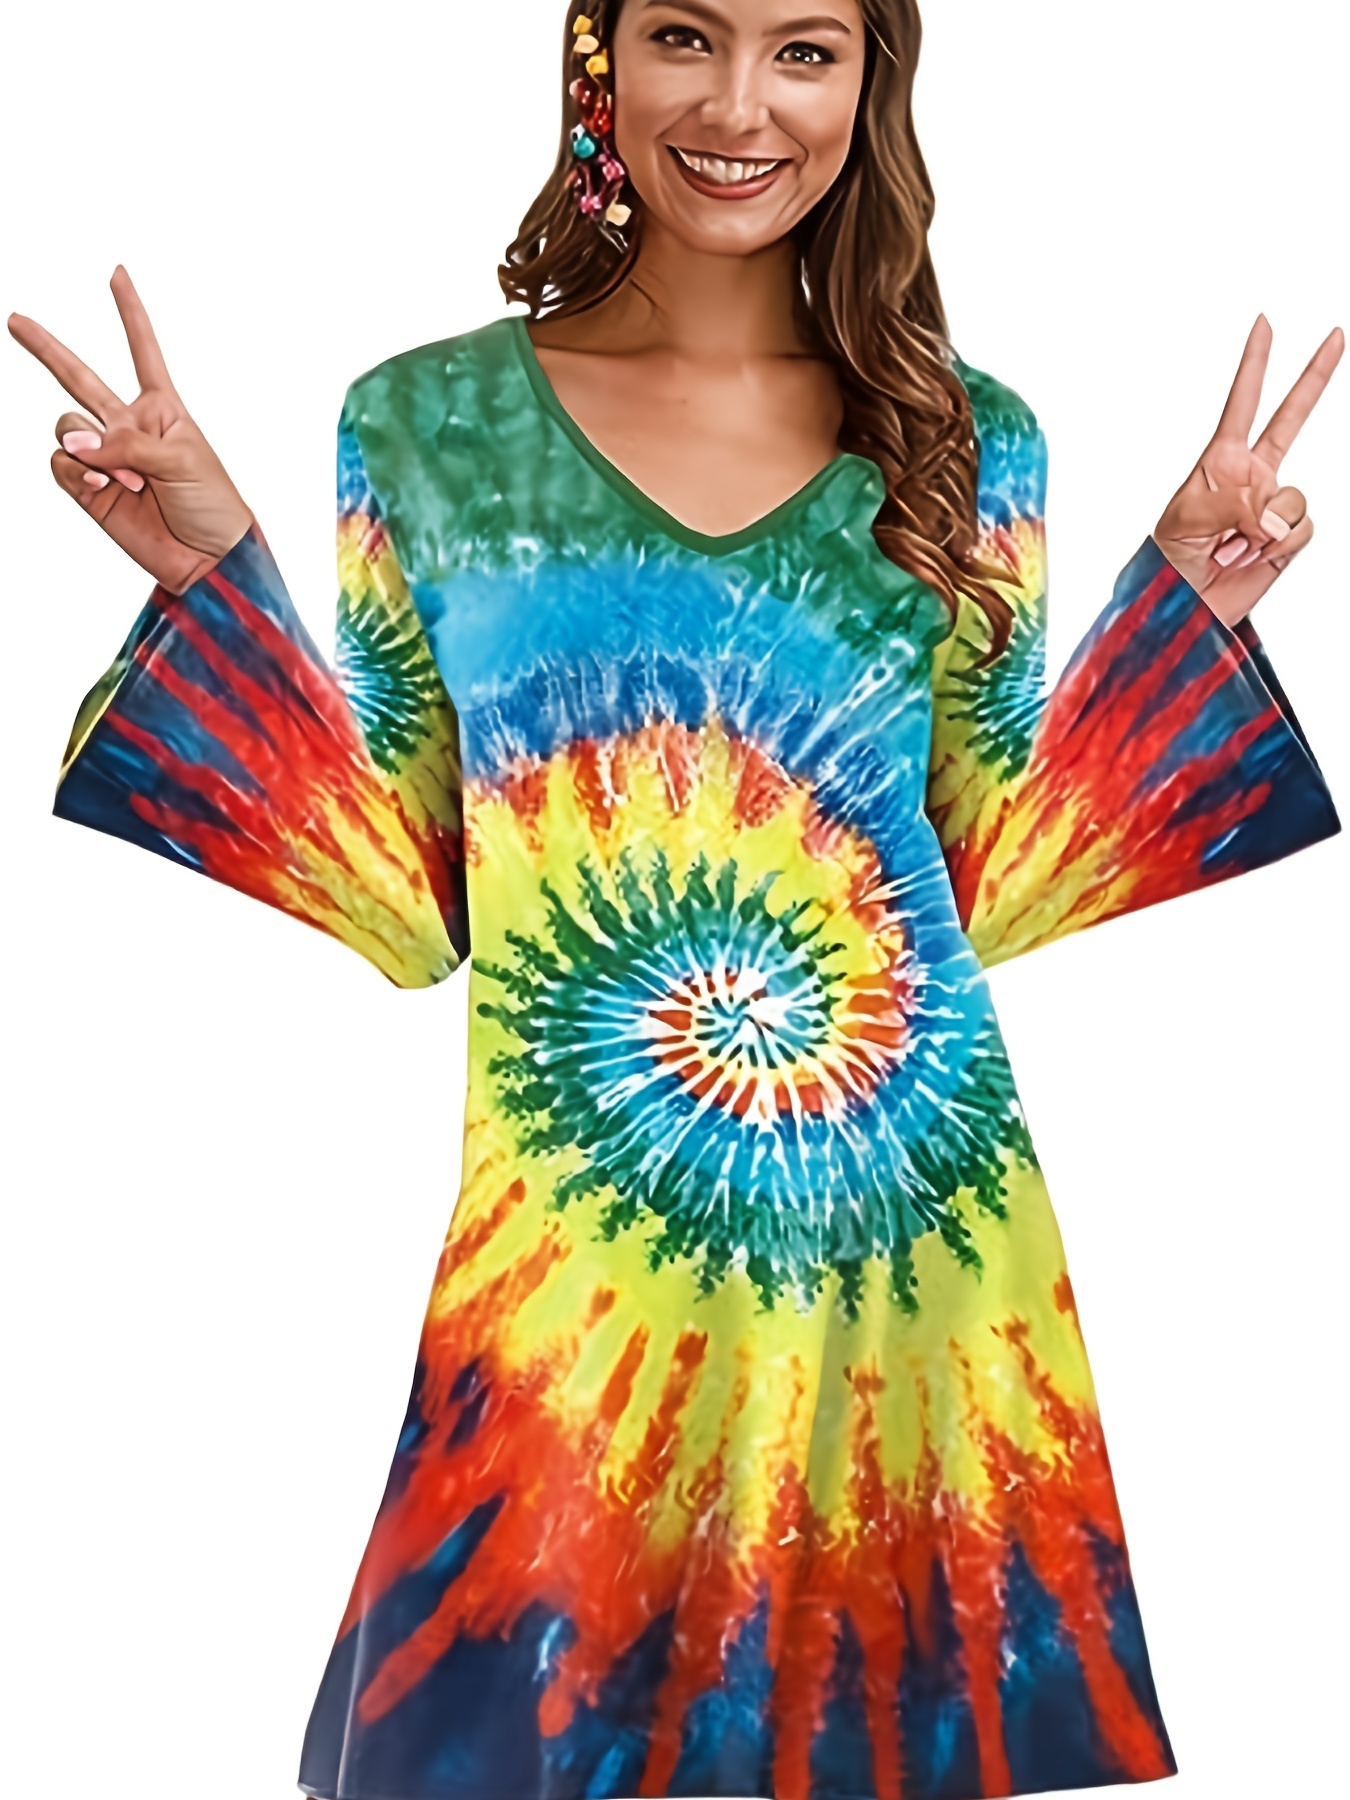 Vestido de disfraz de Halloween hippie de los años 70, traje de carnaval vintage con mangas largas acampanadas y estampado floral, ropa de mujer